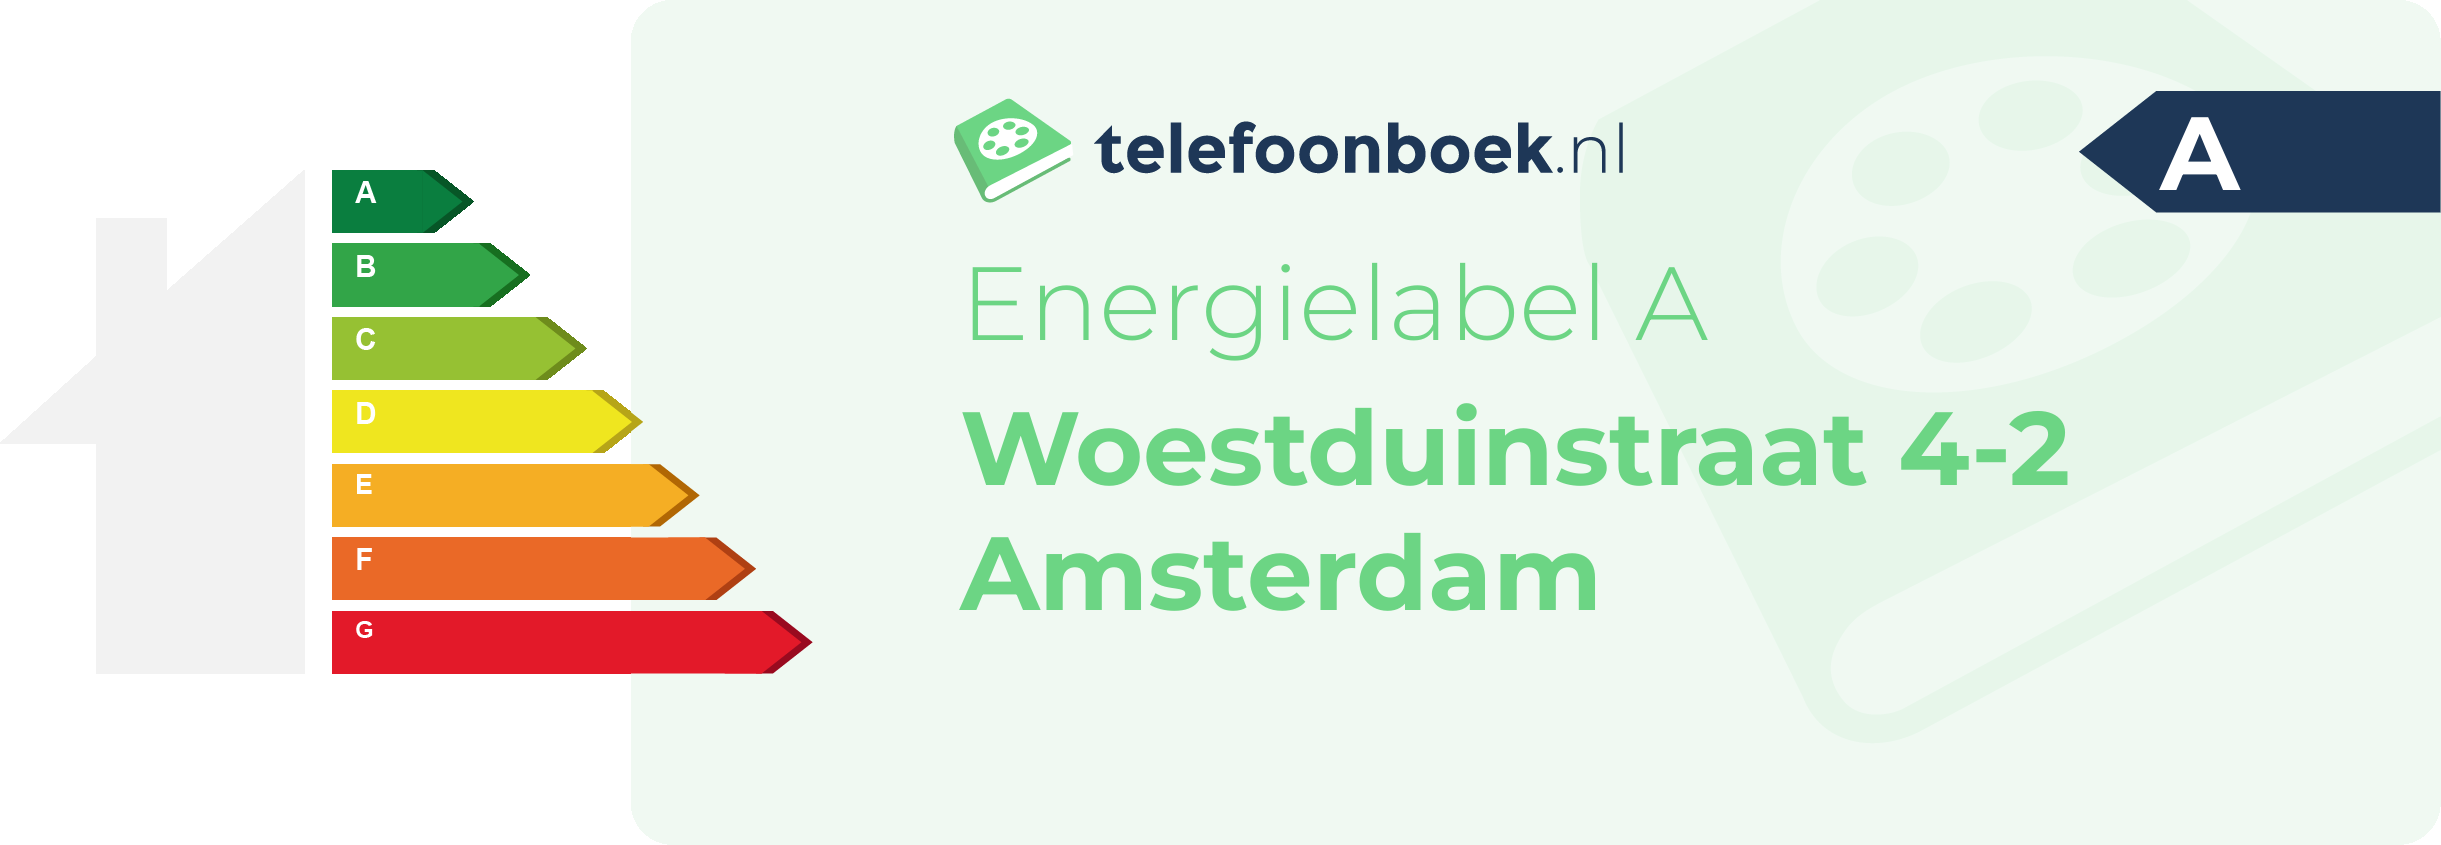 Energielabel Woestduinstraat 4-2 Amsterdam